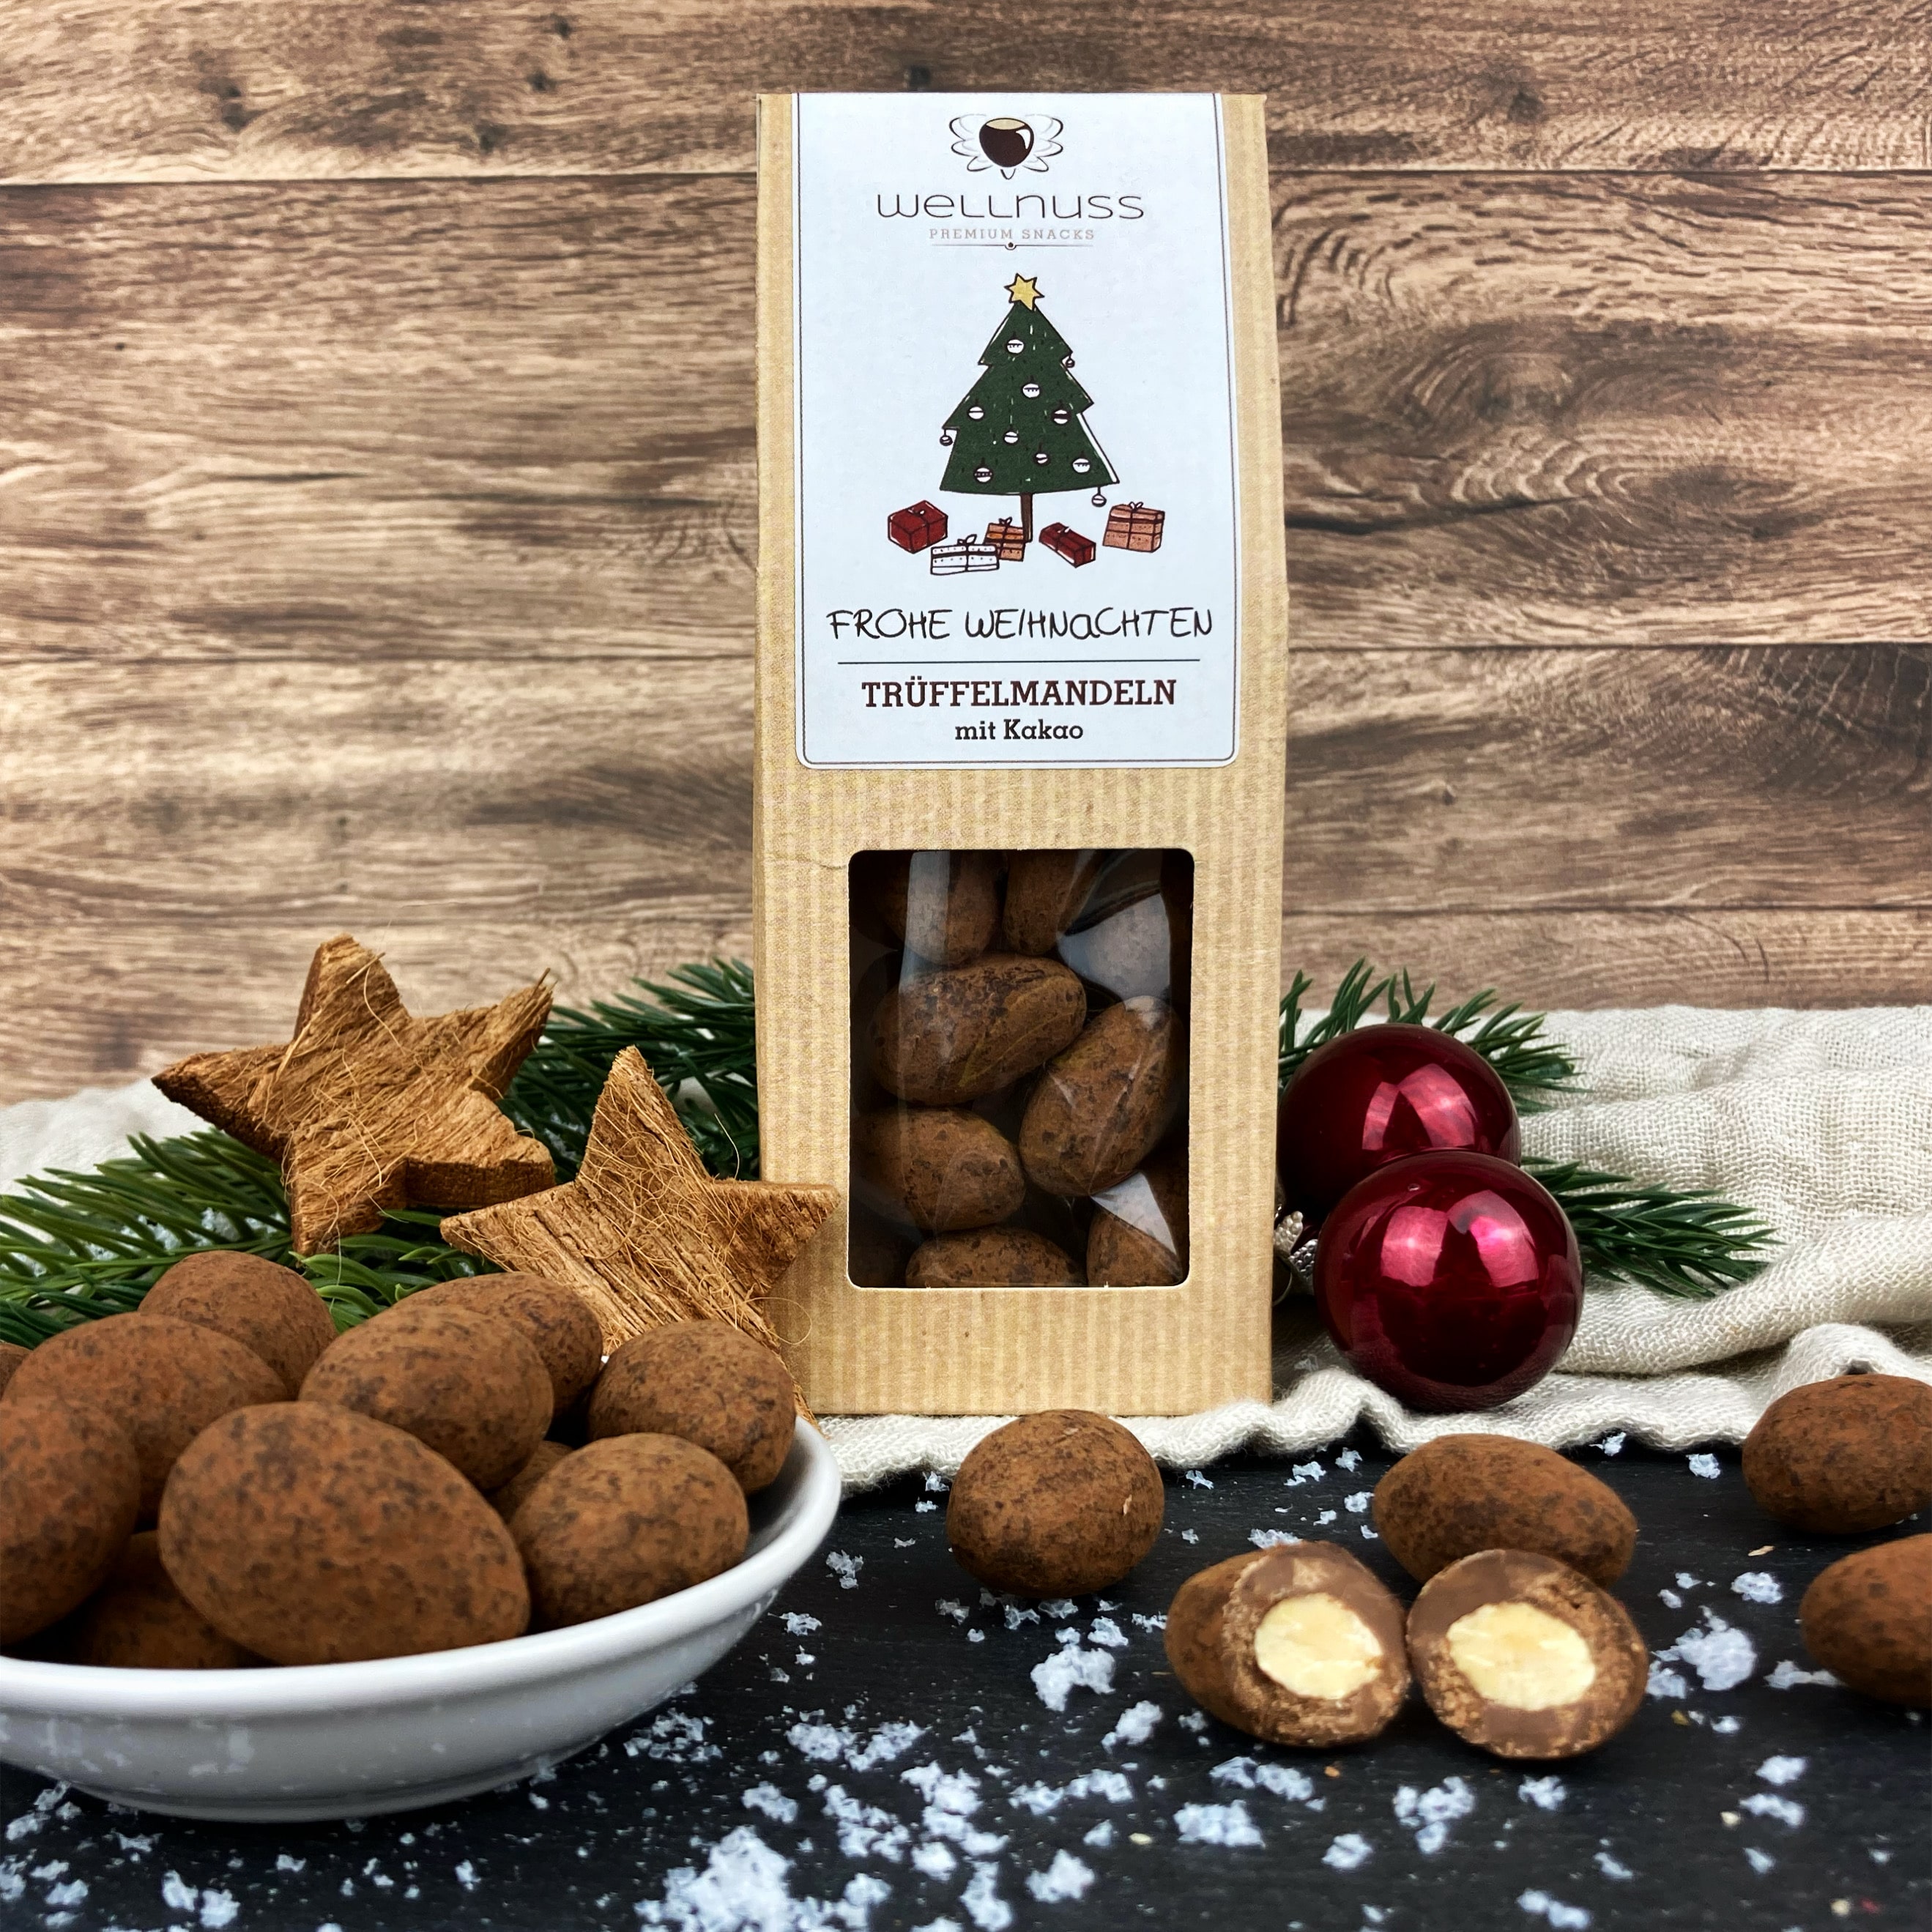 Weihnachtliche Trüffelmandeln mit Kakao